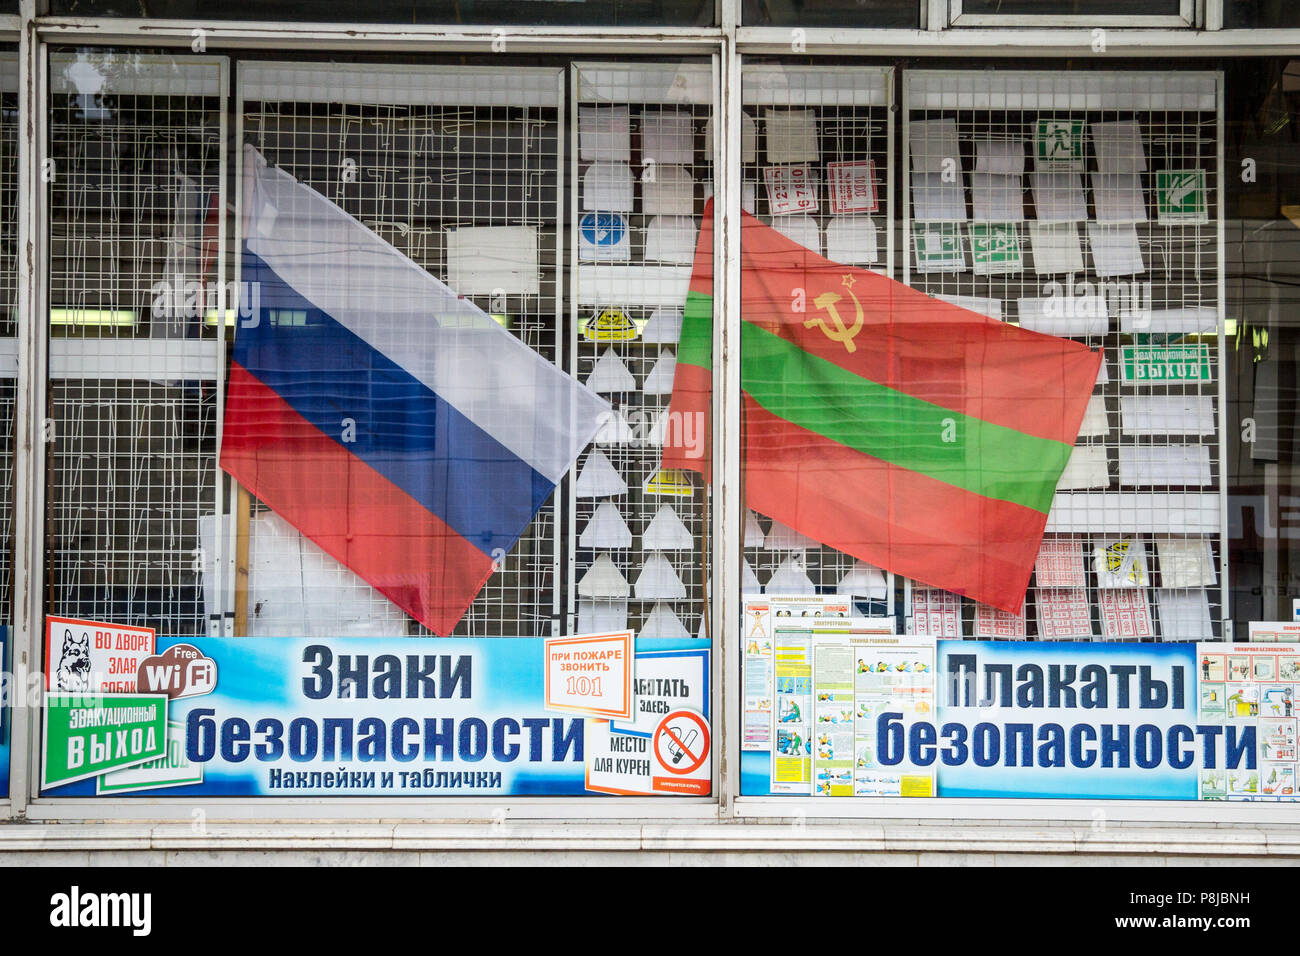 TIRASPOL, TRANSNITRIA, REPUBLIK MOLDAU - 12. AUGUST 2015: Transnistrischen und russische Flaggen im Fenster eines Shop. Transnistrien ist eine abtrünnige Gebiet von Mo Stockfoto